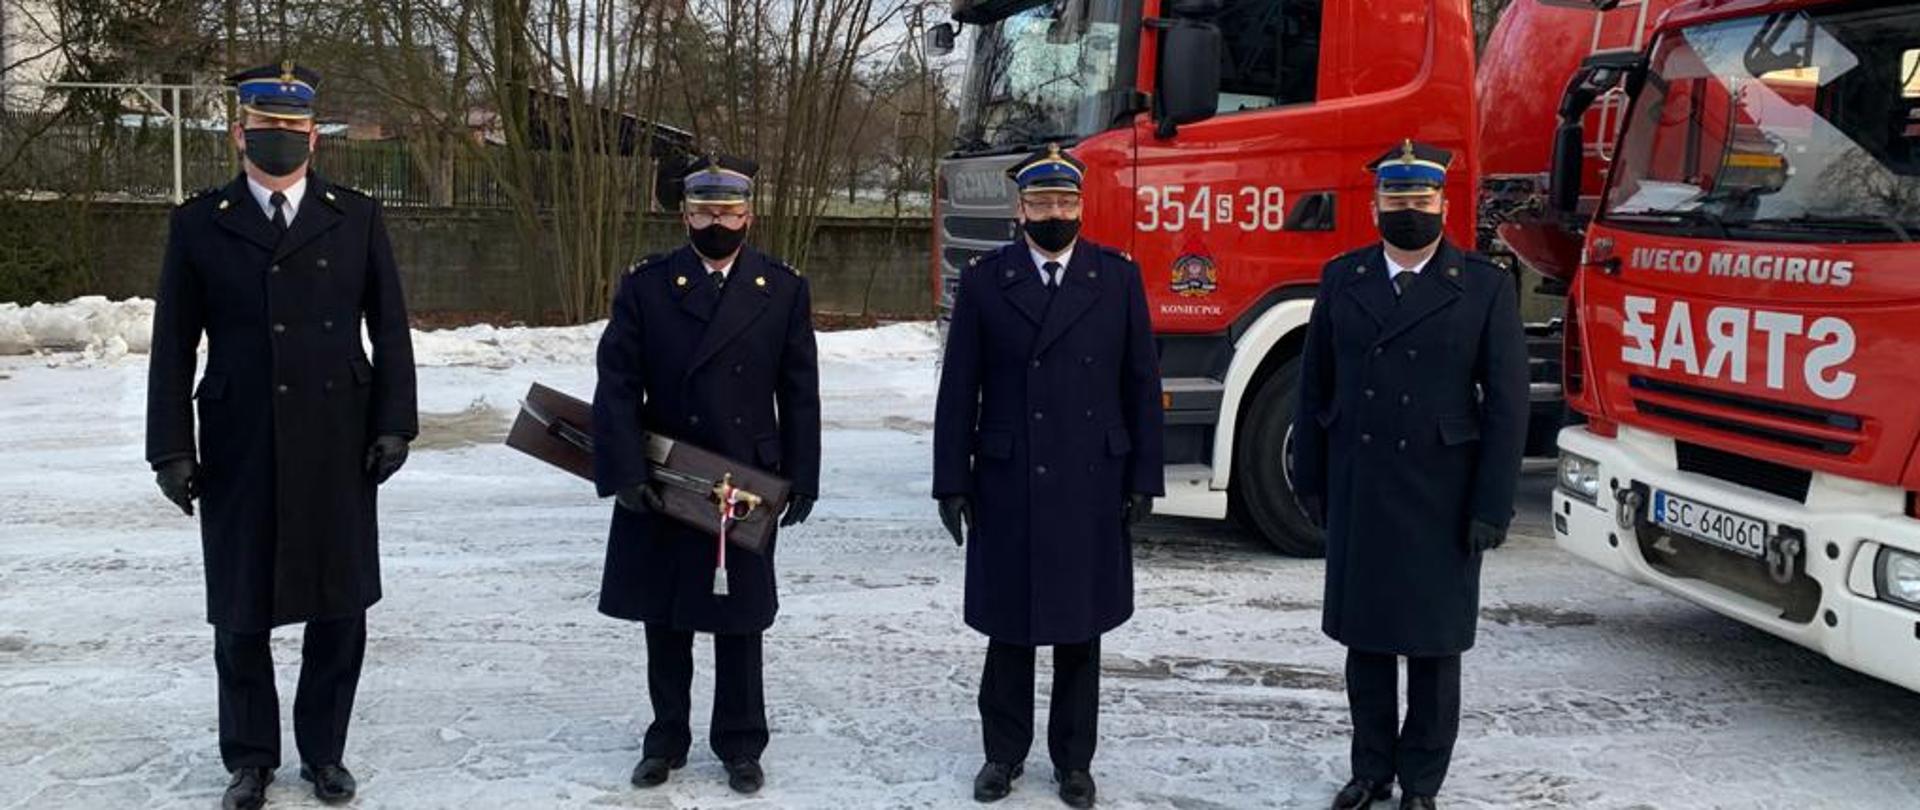 Zdjęcia przedstawia 4 funkcjonariuszy Państwowej Straży Pożarnej w mundurach wyjściowych na tle samochodów pożarniczych. 